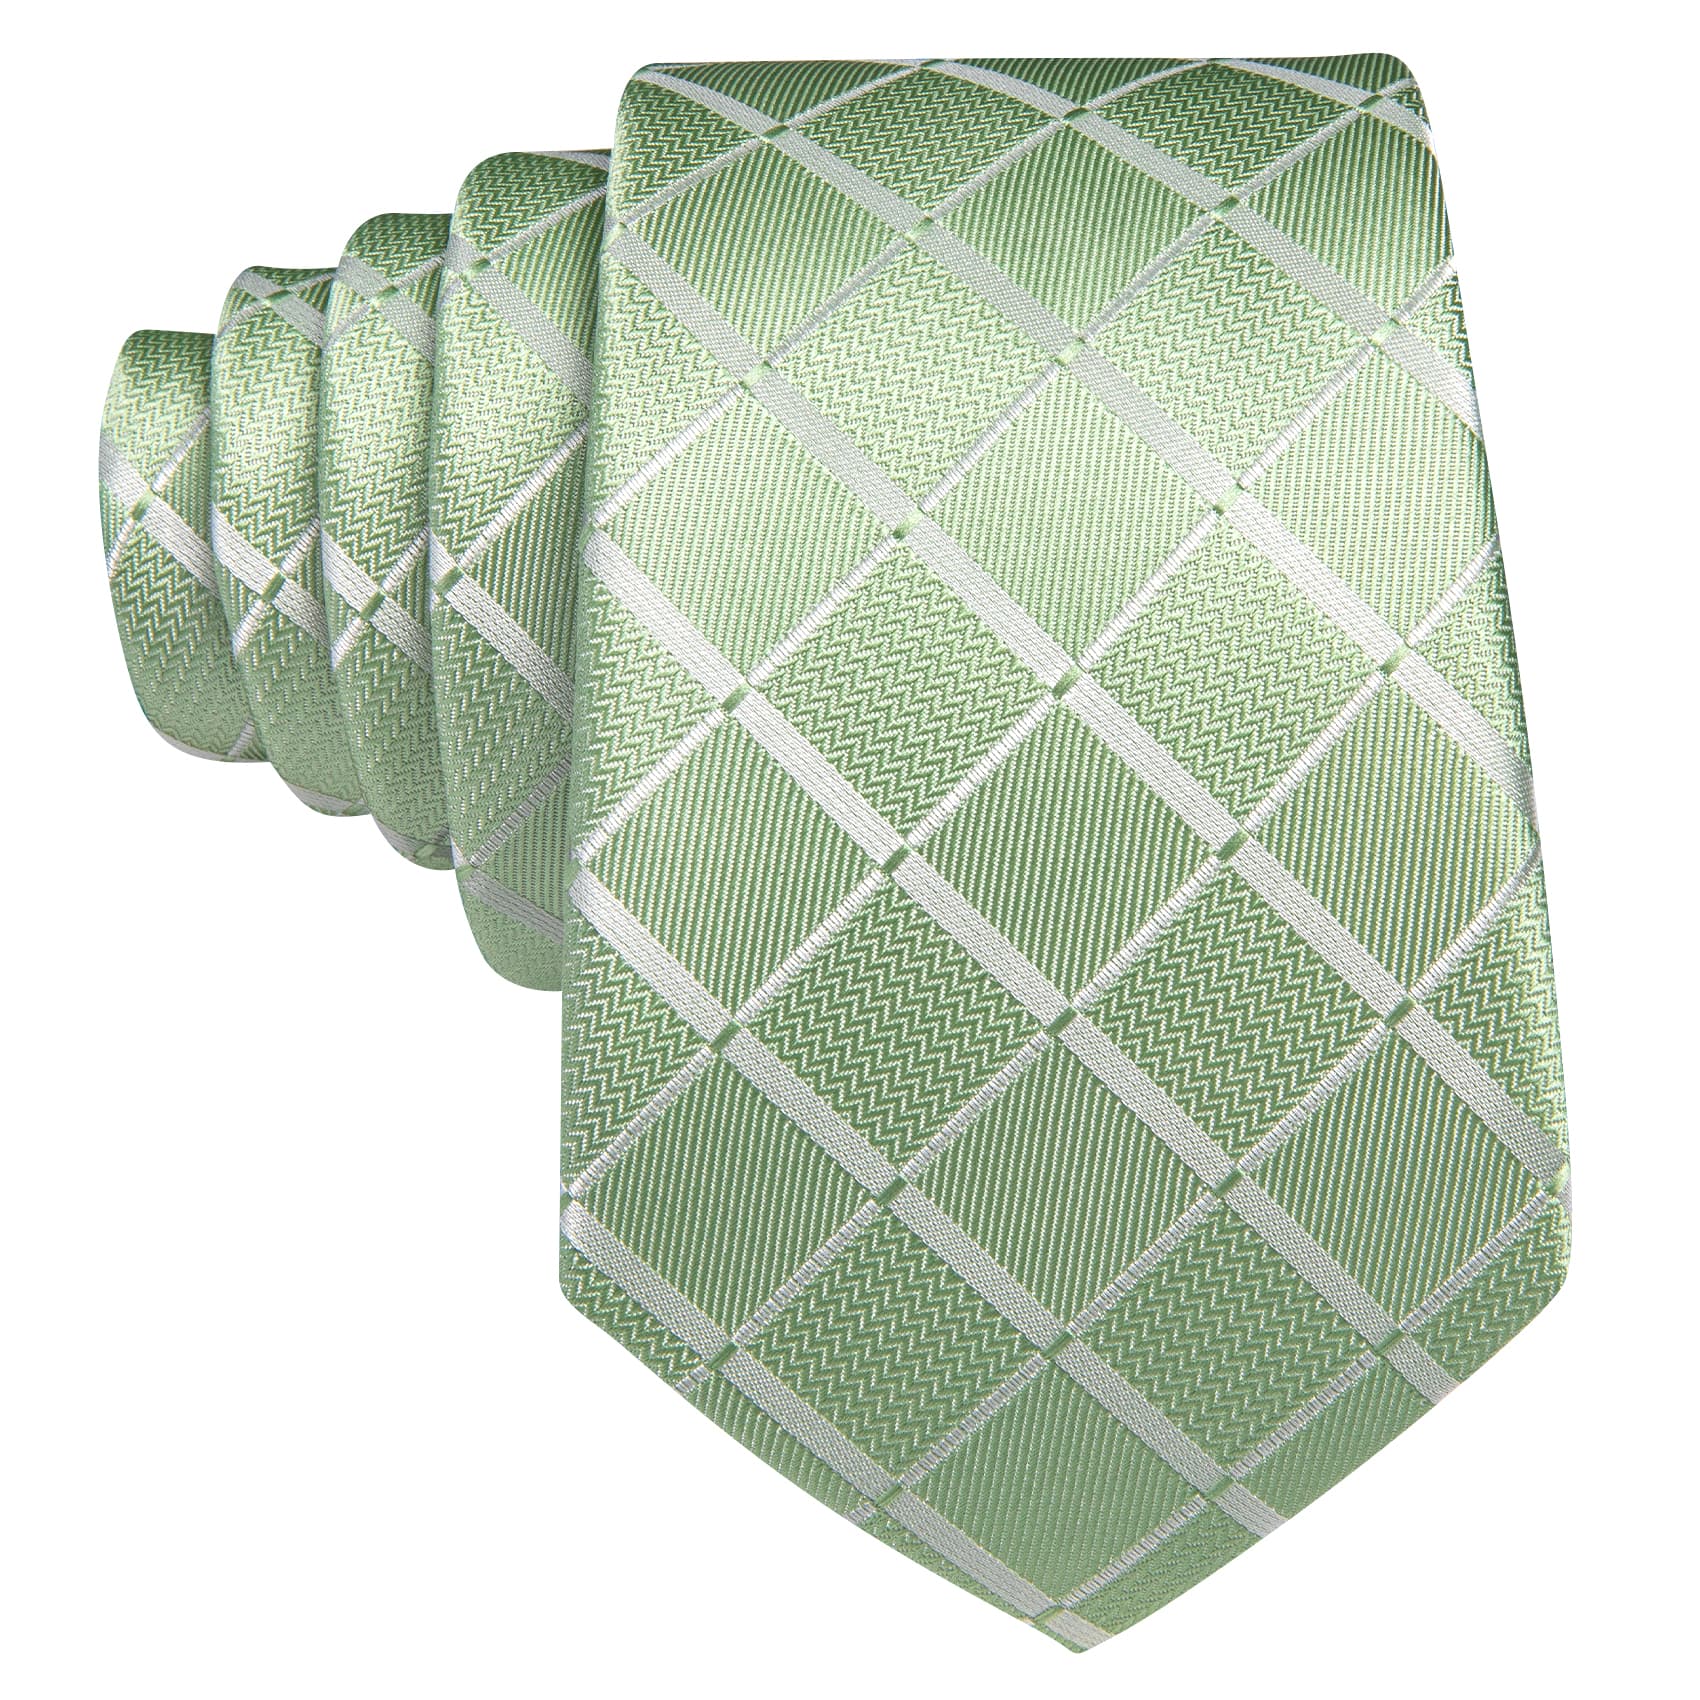  Mens Plaid Tie Mint Green Checkered Necktie Set